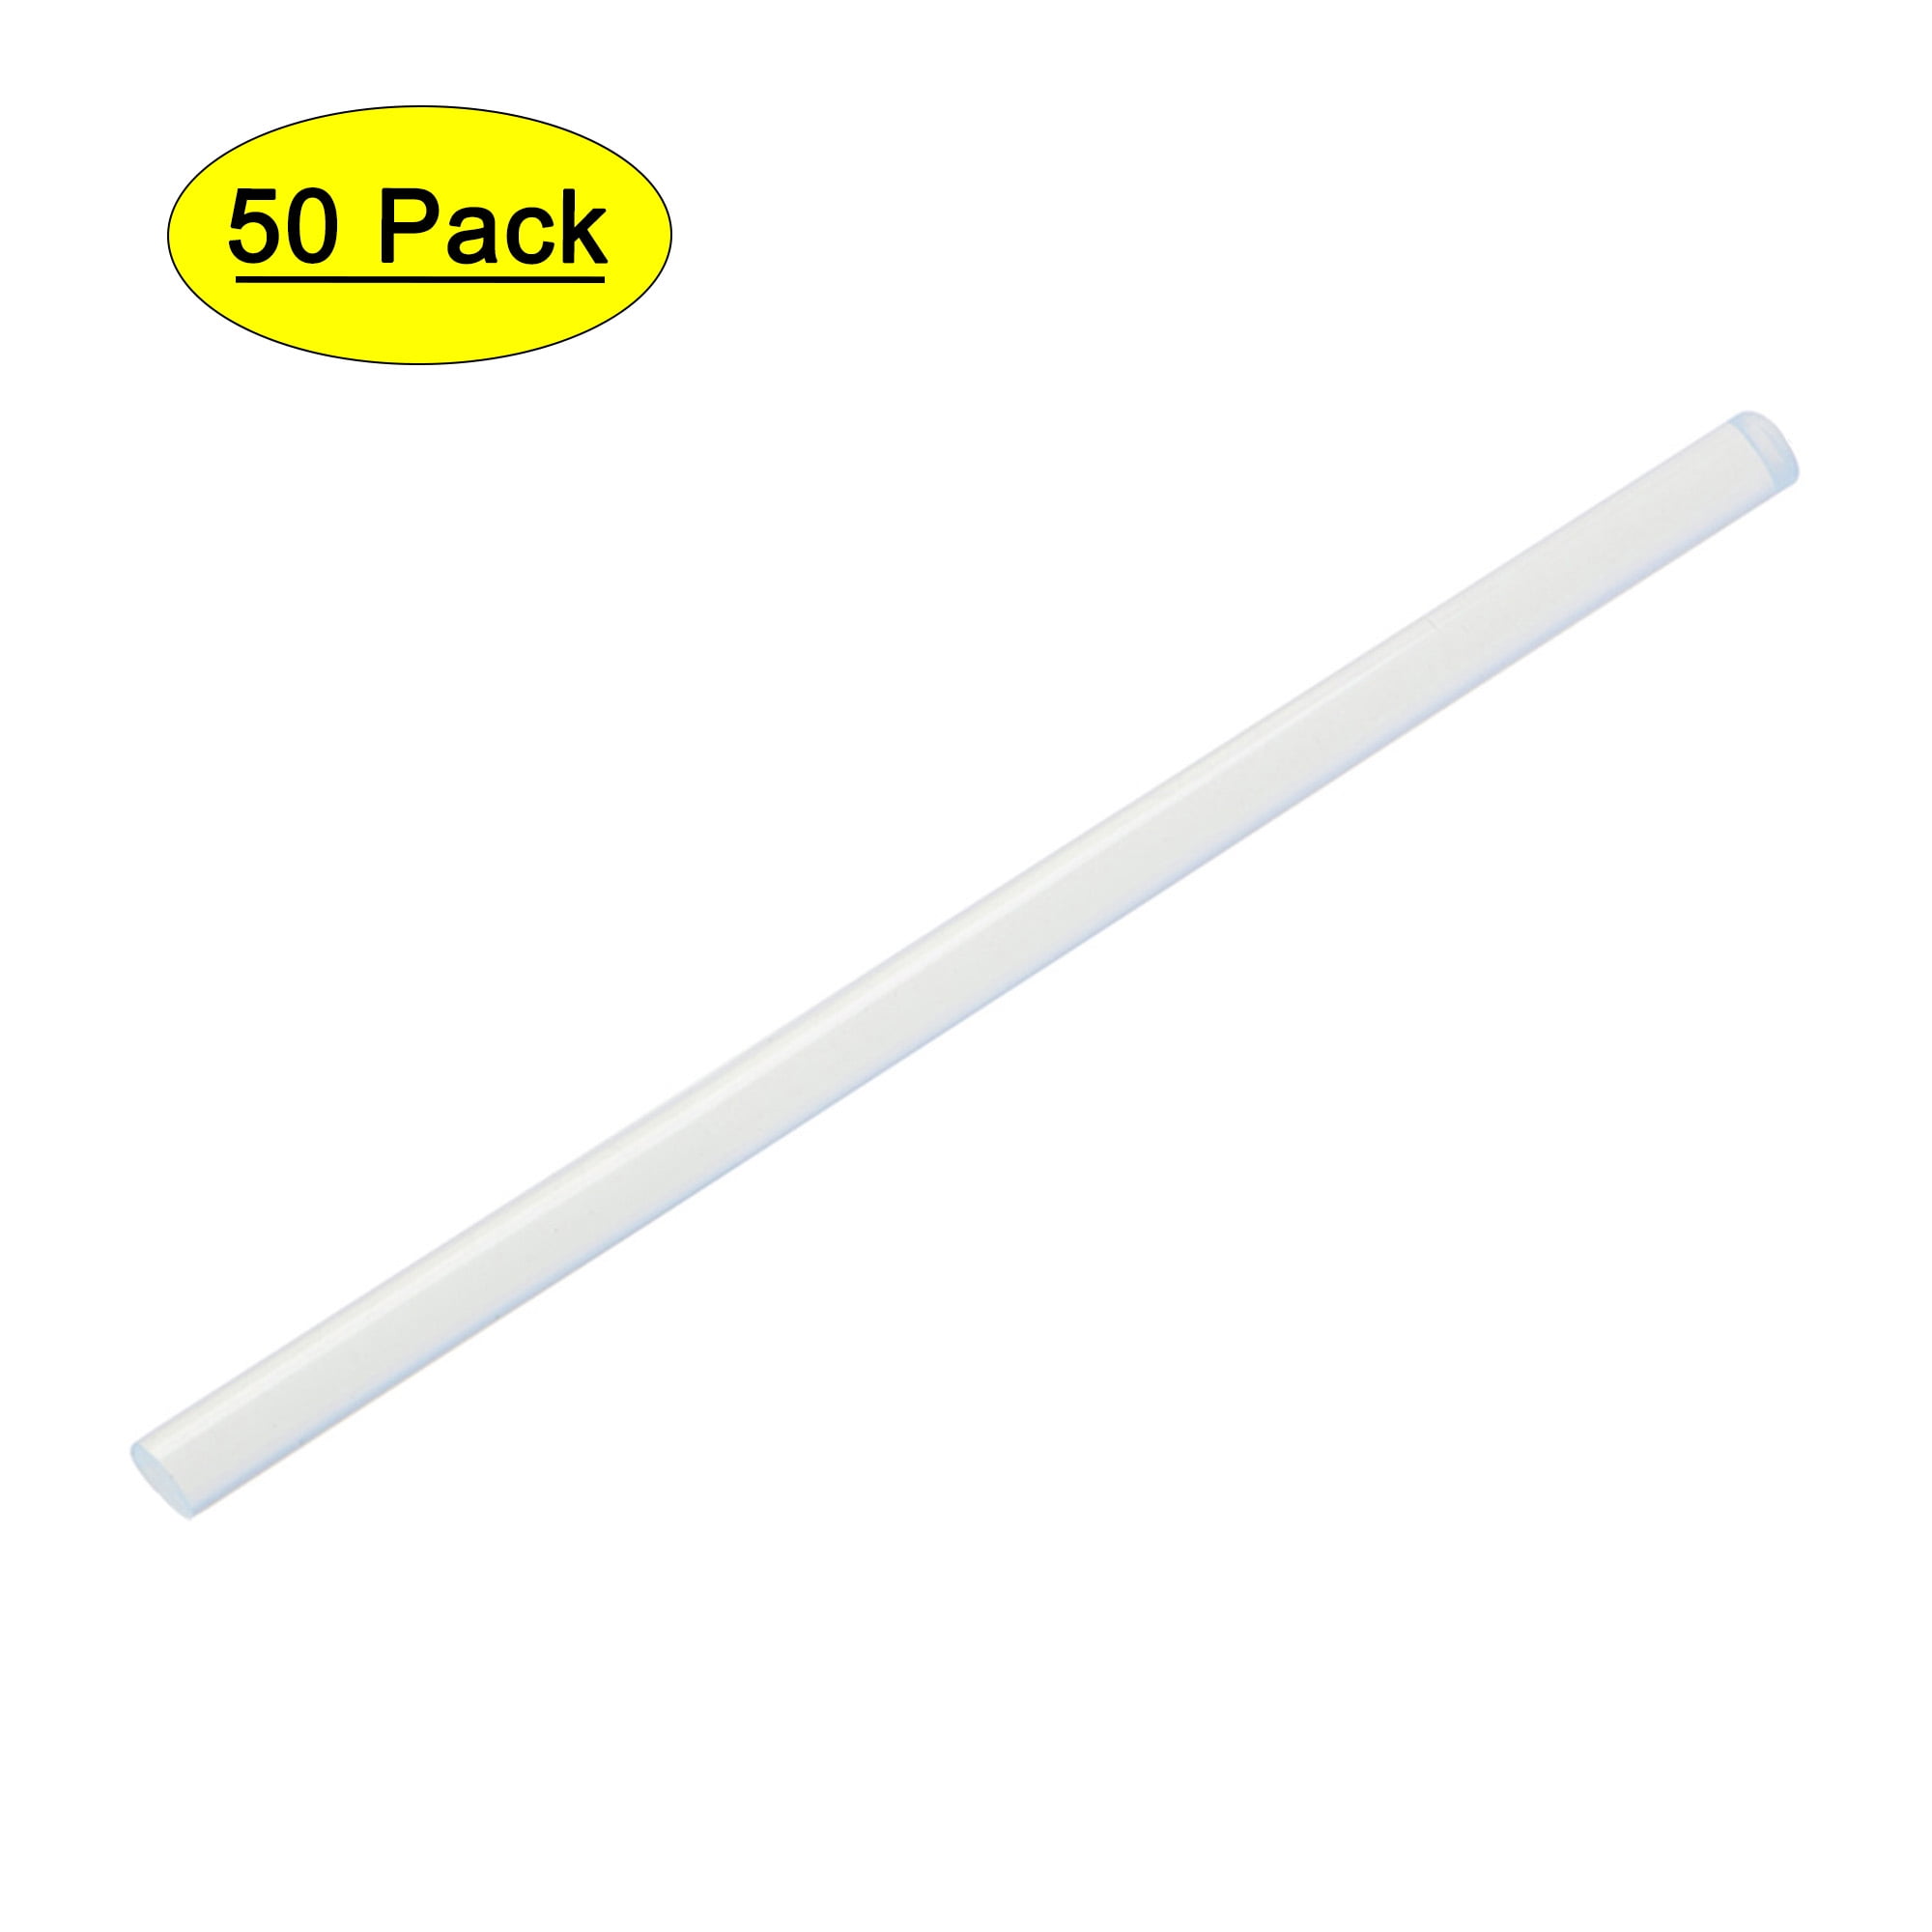 Uxcell 0.27 x 4 Black Mini Hot Glue Sticks for Glue Gun 6 Pack